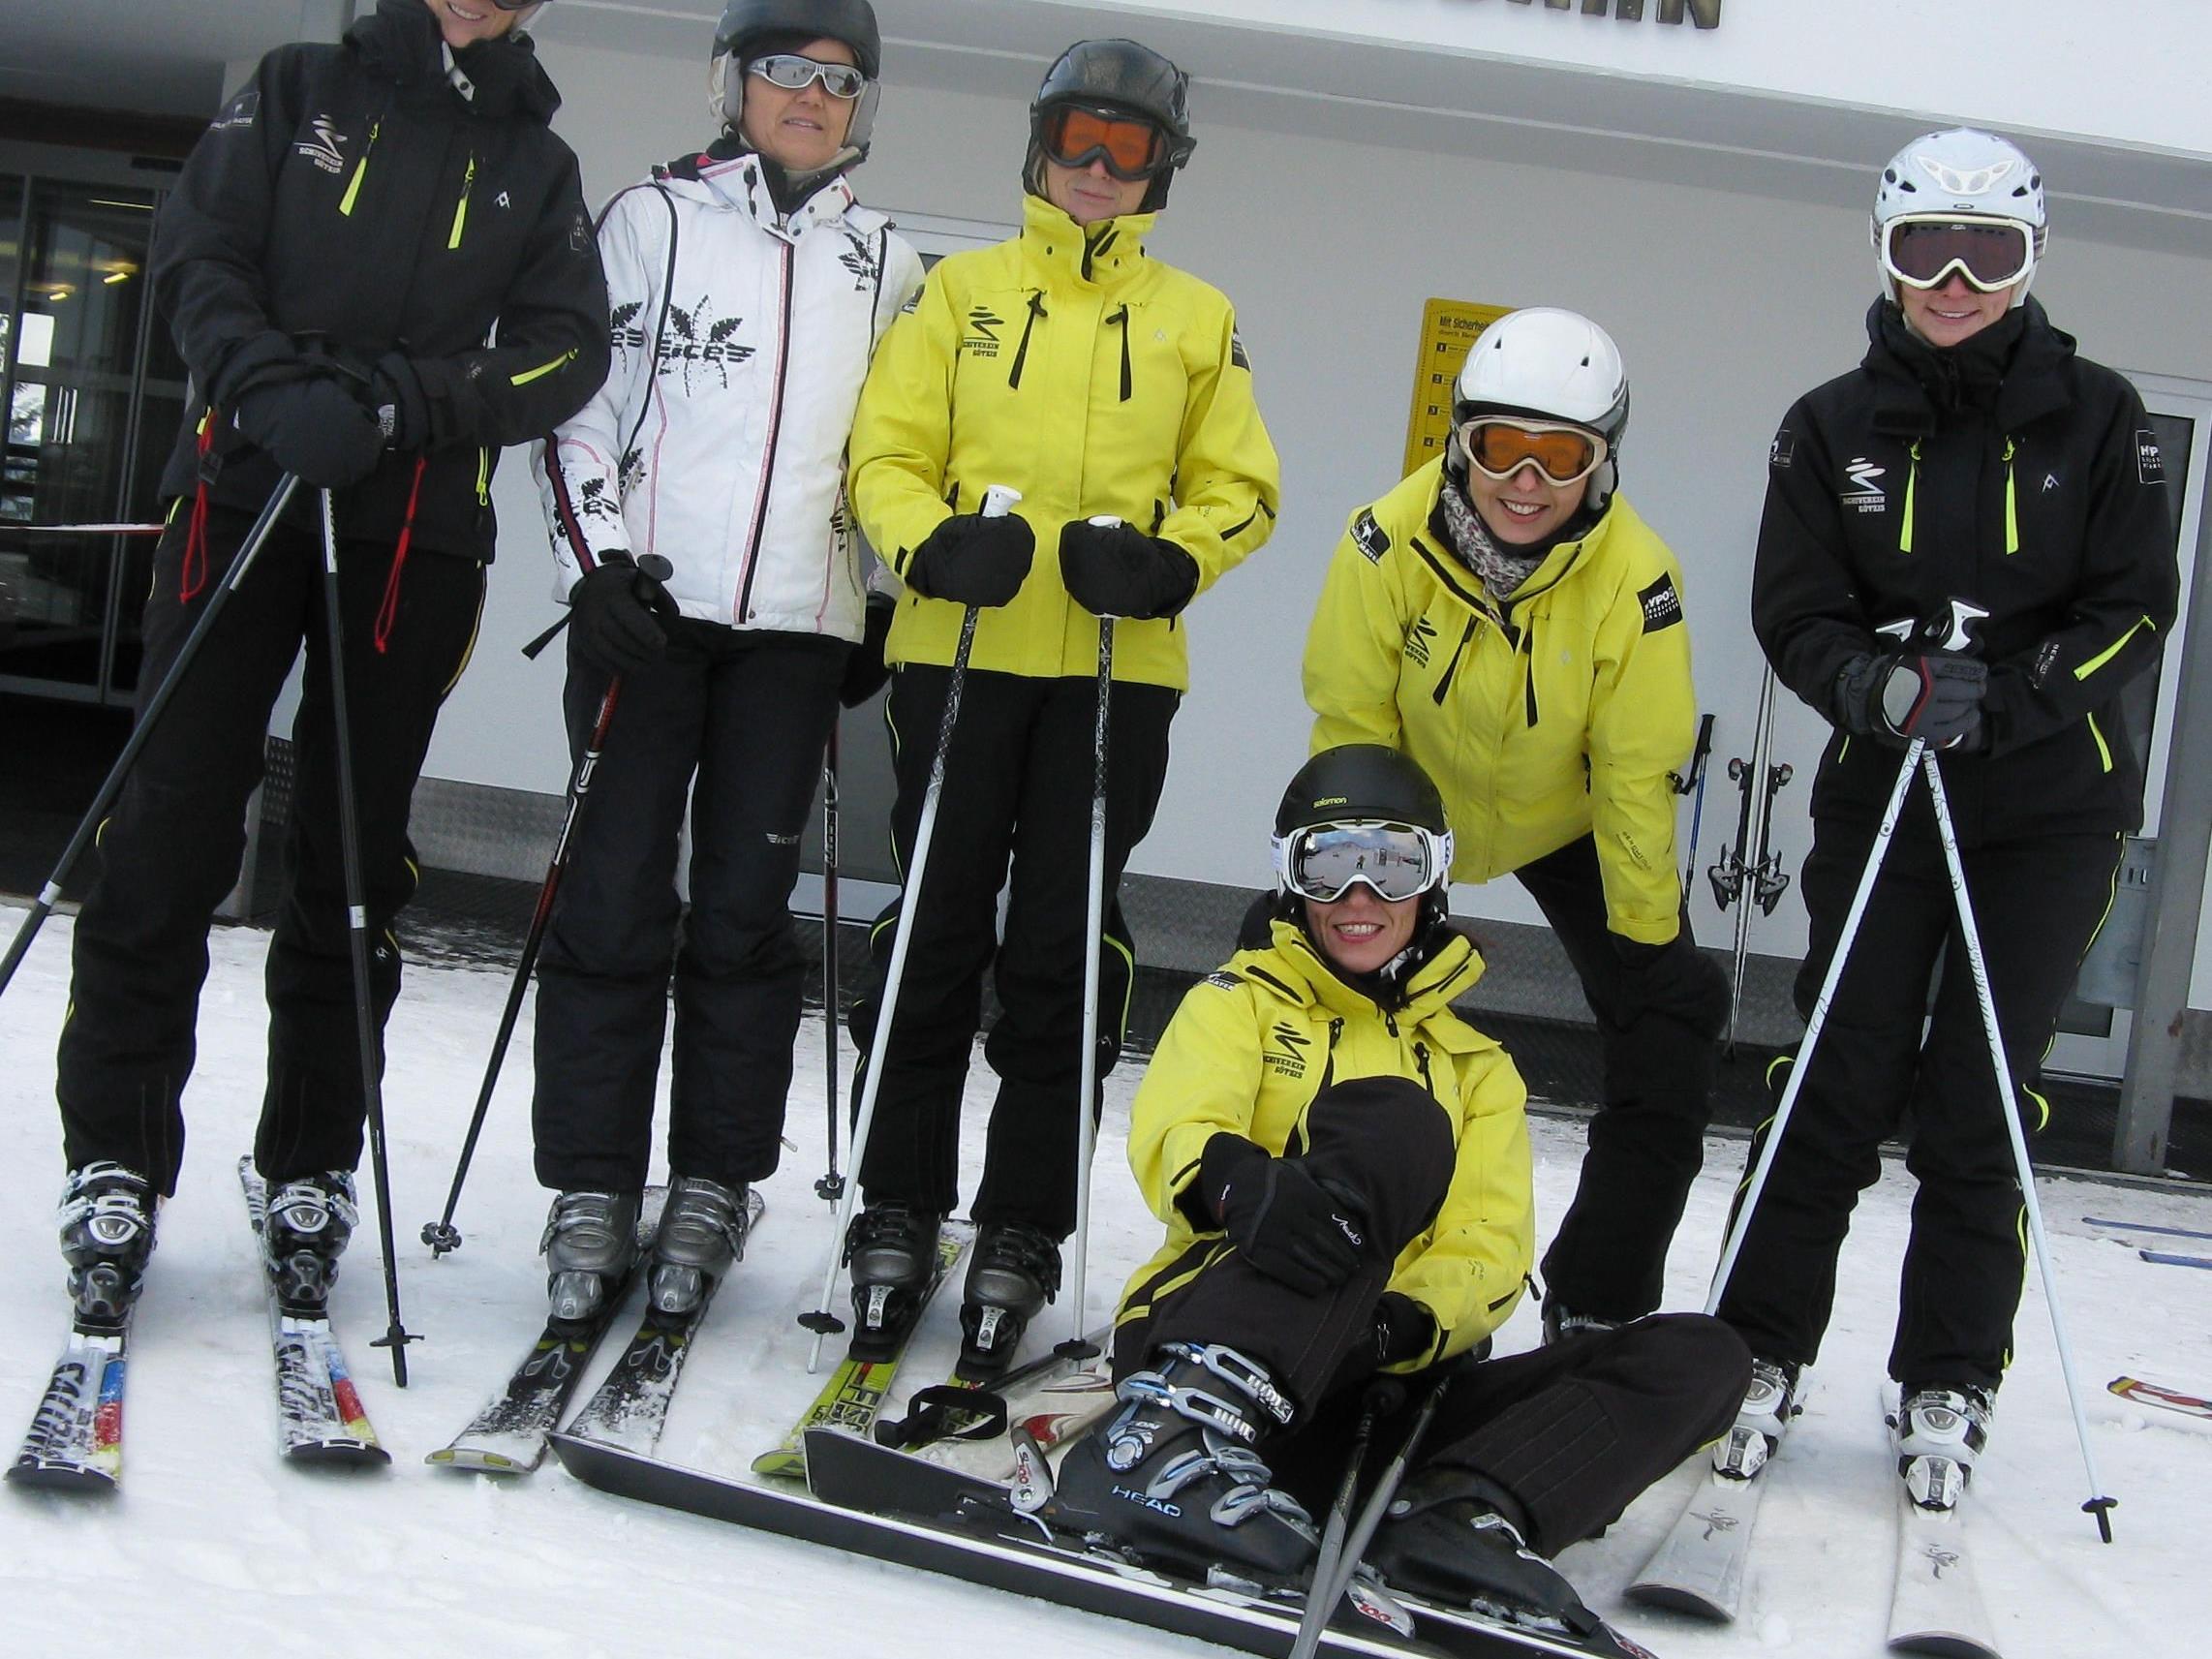 Viel Spaß hatten die "Moadla" beim Skitraining   -   Mehr Fotos unter: www.sv-goetzis.at